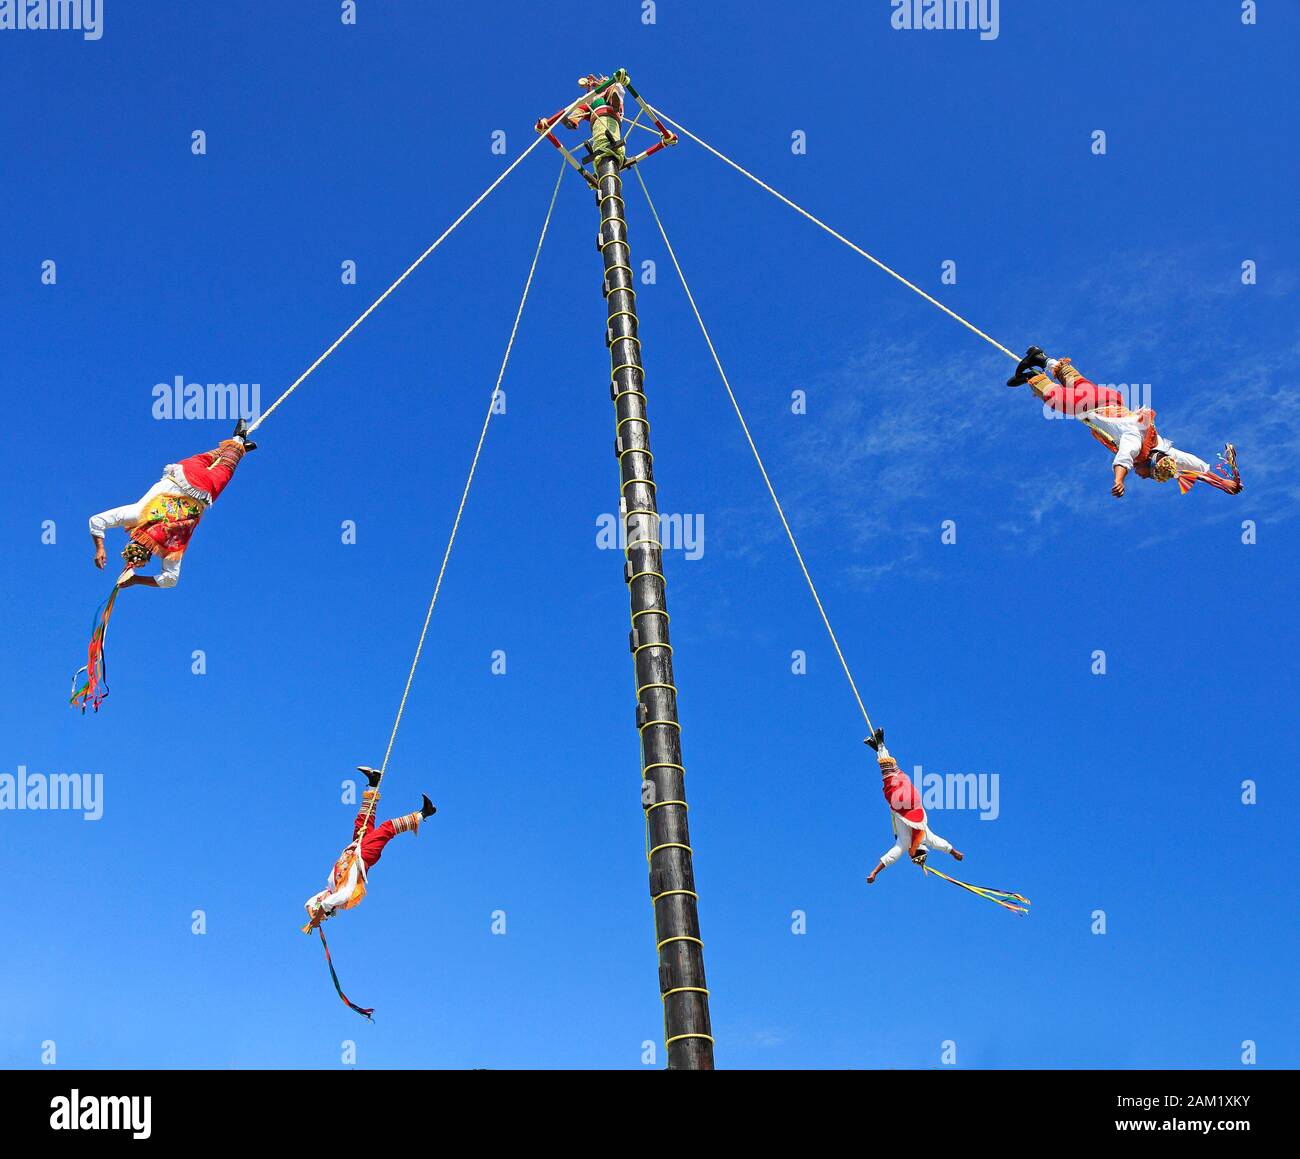 : Die Voladores oder Flyer Performance. Sie klettern einen sehr hohen Pfosten an ihrer Taille hoch, um Seile zu ziehen, die um den Pfosten gewickelt sind, und springen dann ab, wobei sie anmutig fliegen Stockfoto